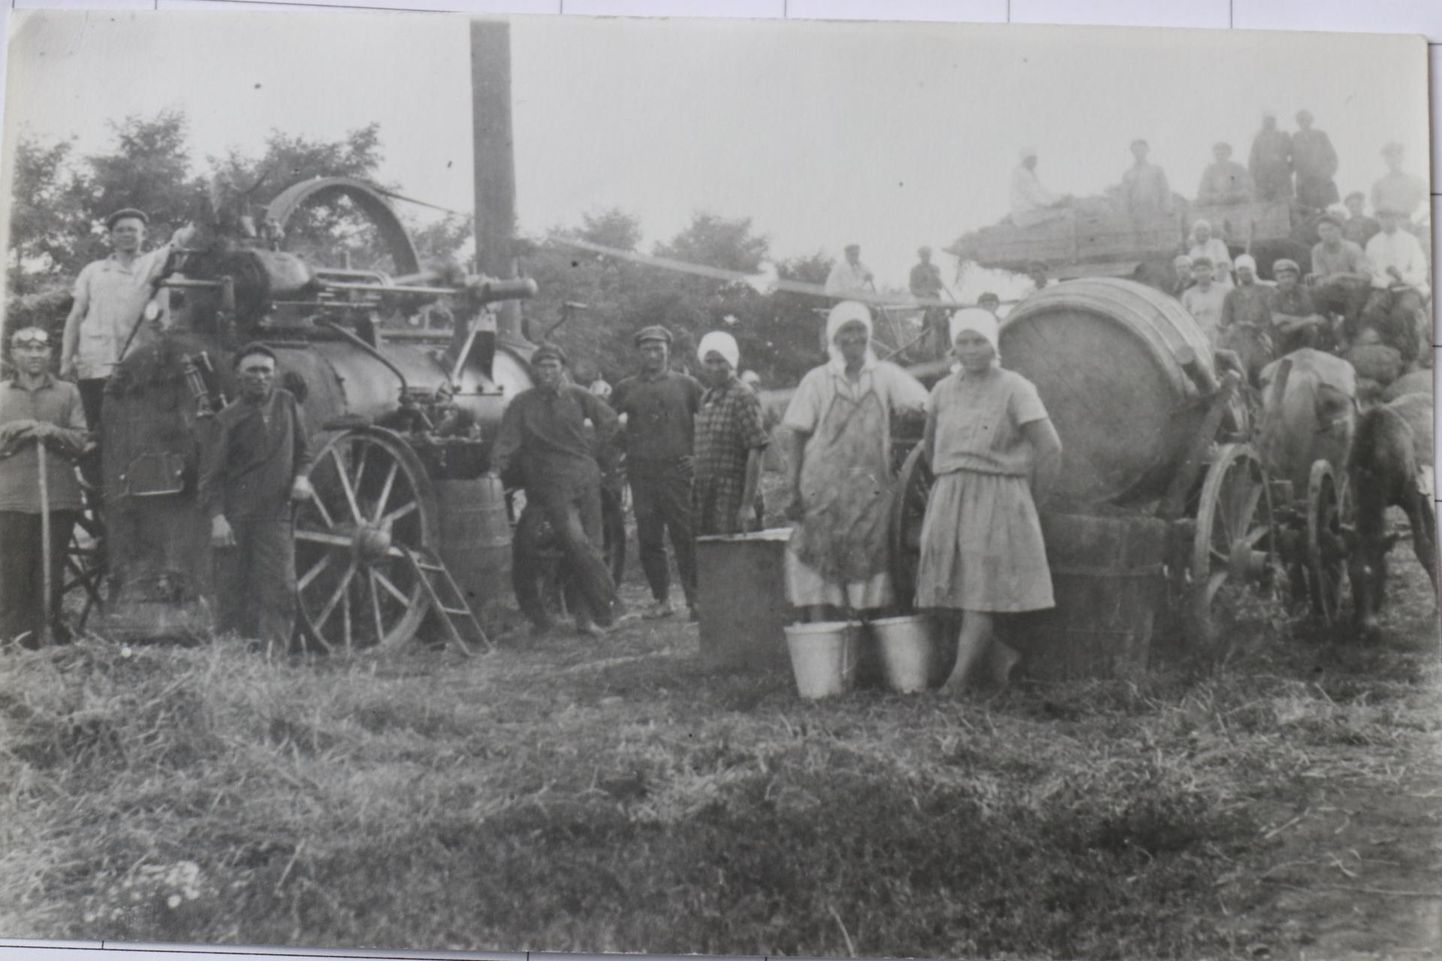 1931. aastal Uus-Eesti külas tehtud foto, kus lokomotiivi kõrval poseerivad korraga nii pealekaebaja kui ka tema tulevased ohvrid. Vasakult esimene on Albert Jakobson ja vasakult neljas Jaan Henno, kes seitse aastat hiljem lastakse maha vasakult teisena seisva Gavriil Umnovi pealekaebuse tõttu. Nii vähemalt väidavad külaelanikud ise. Paremal seisavad Matilda Henno, Aurelia Kiitam ja Elviina Miilits, kelle abikaasas viidi samuti minema. FOTO: Arhiiv